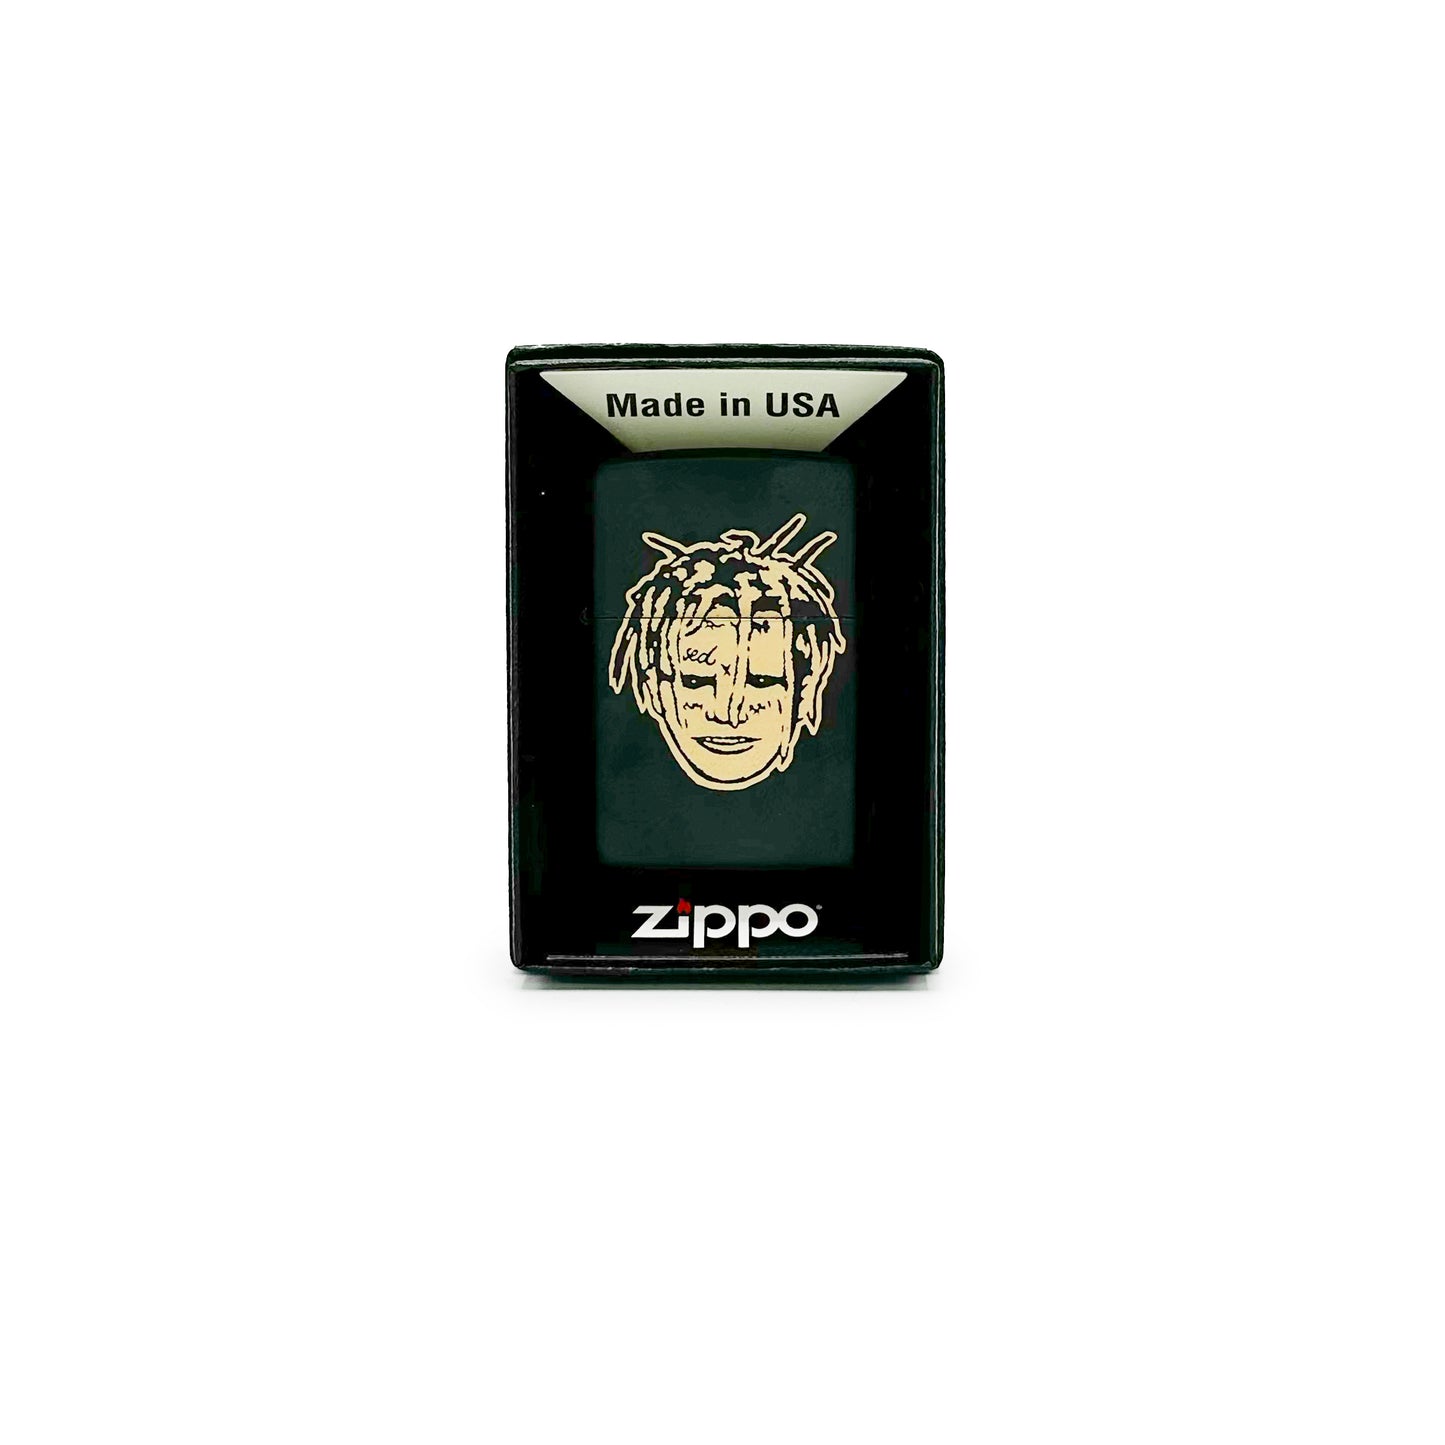 Chapter 17 - Zippo Lighter - Ever Dream This Man? - Matte Black - Brass Face